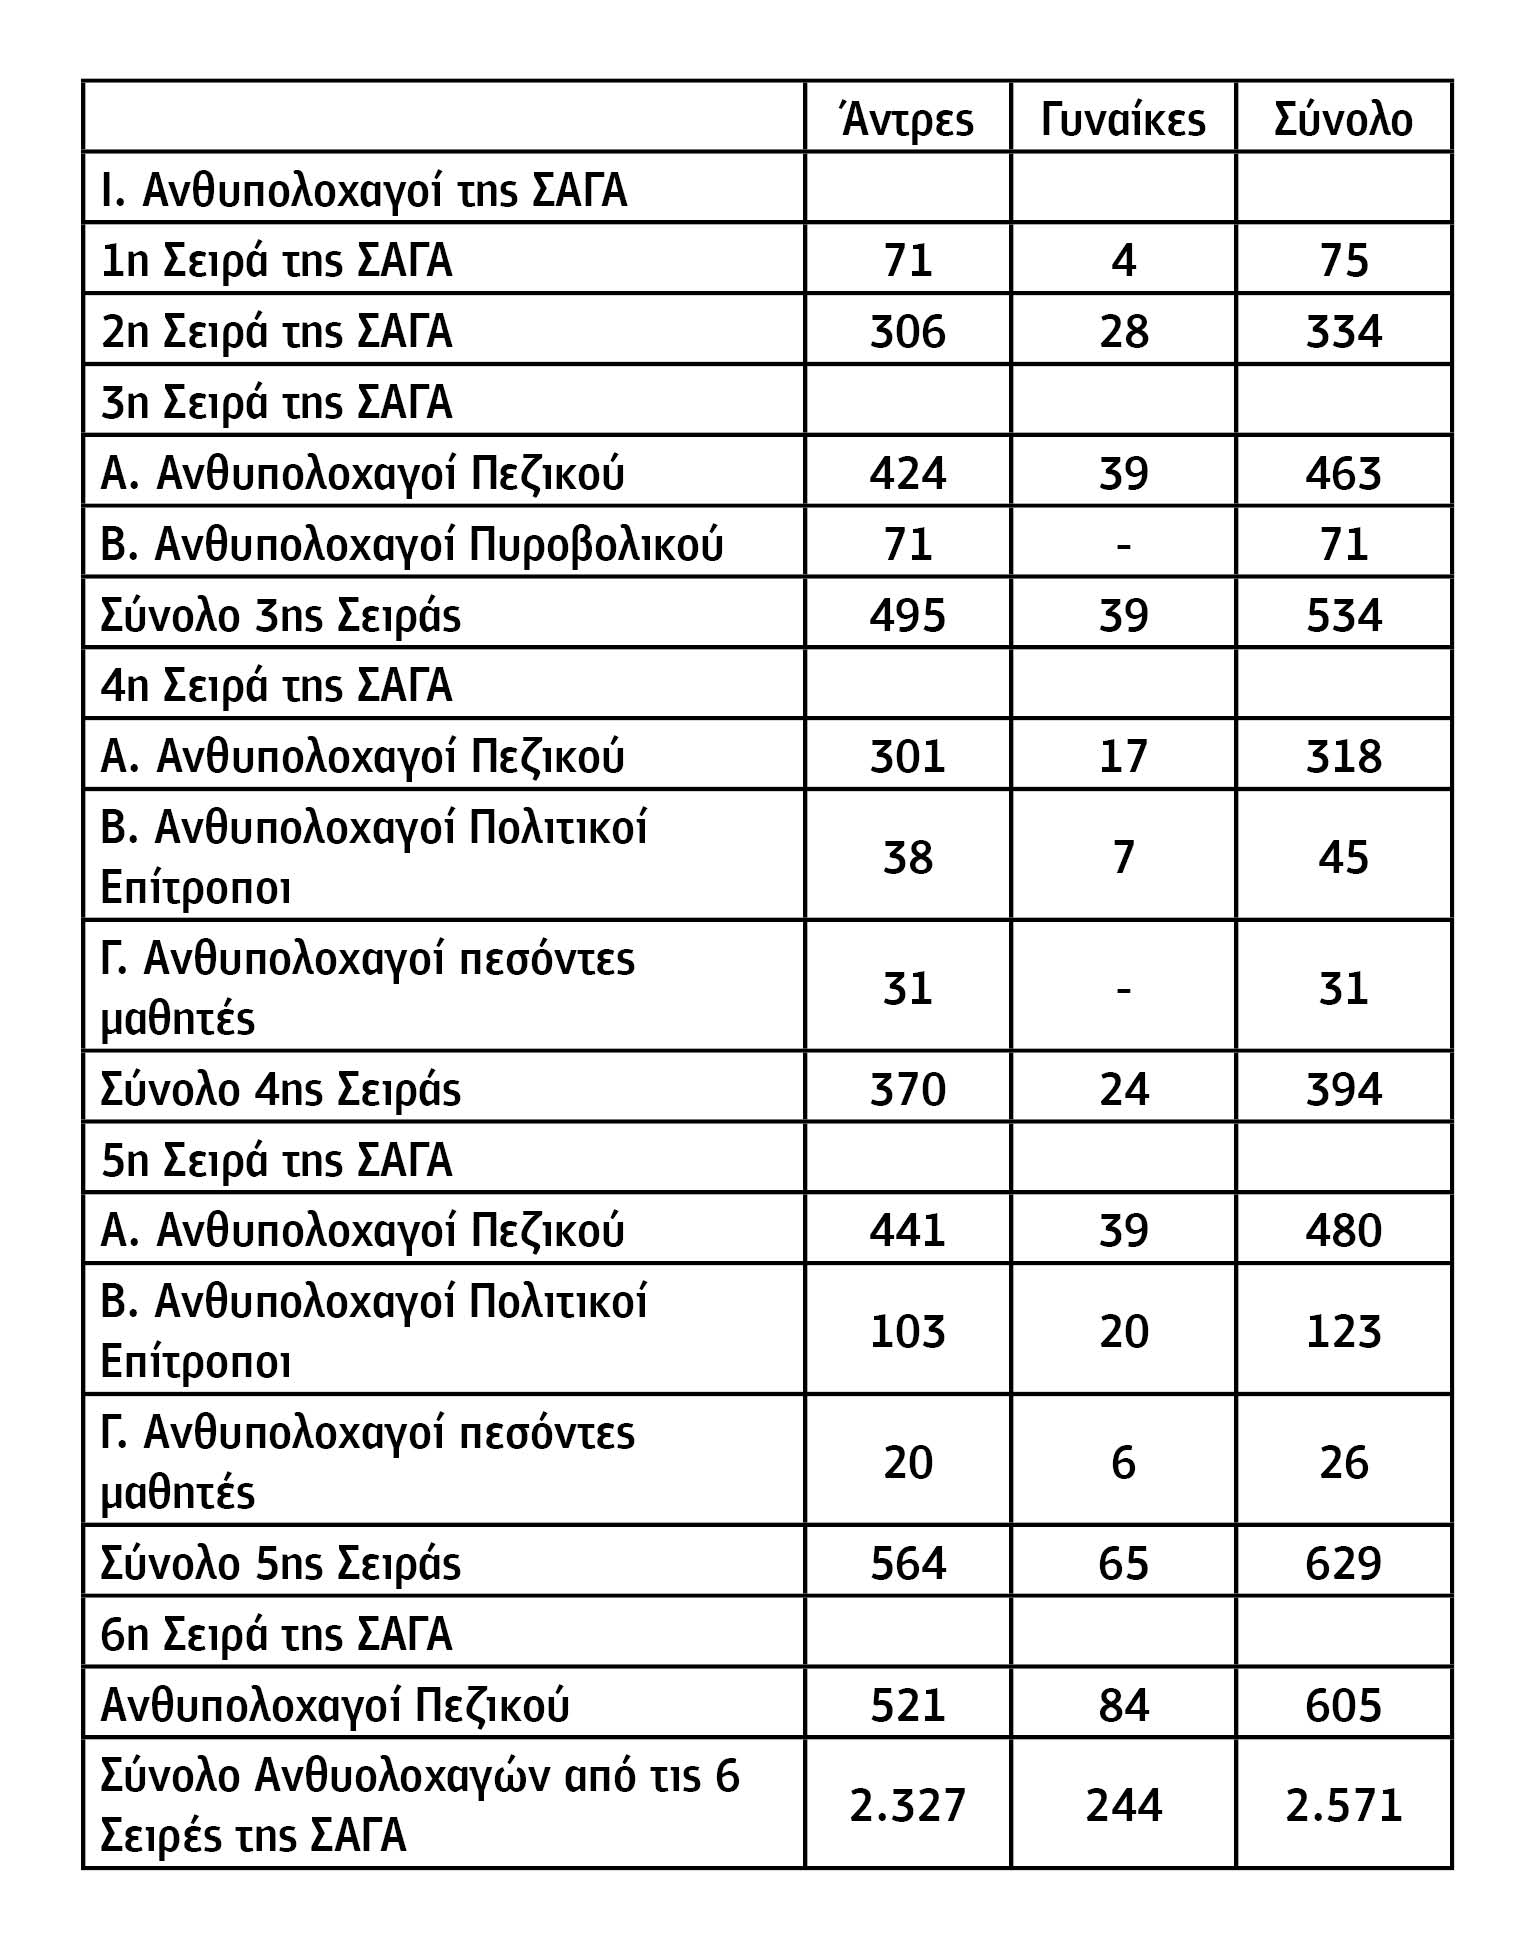 Κατάλογος Απόφοιτων Ανθυπολοχαγών από τις Σχολές του ΔΣΕ